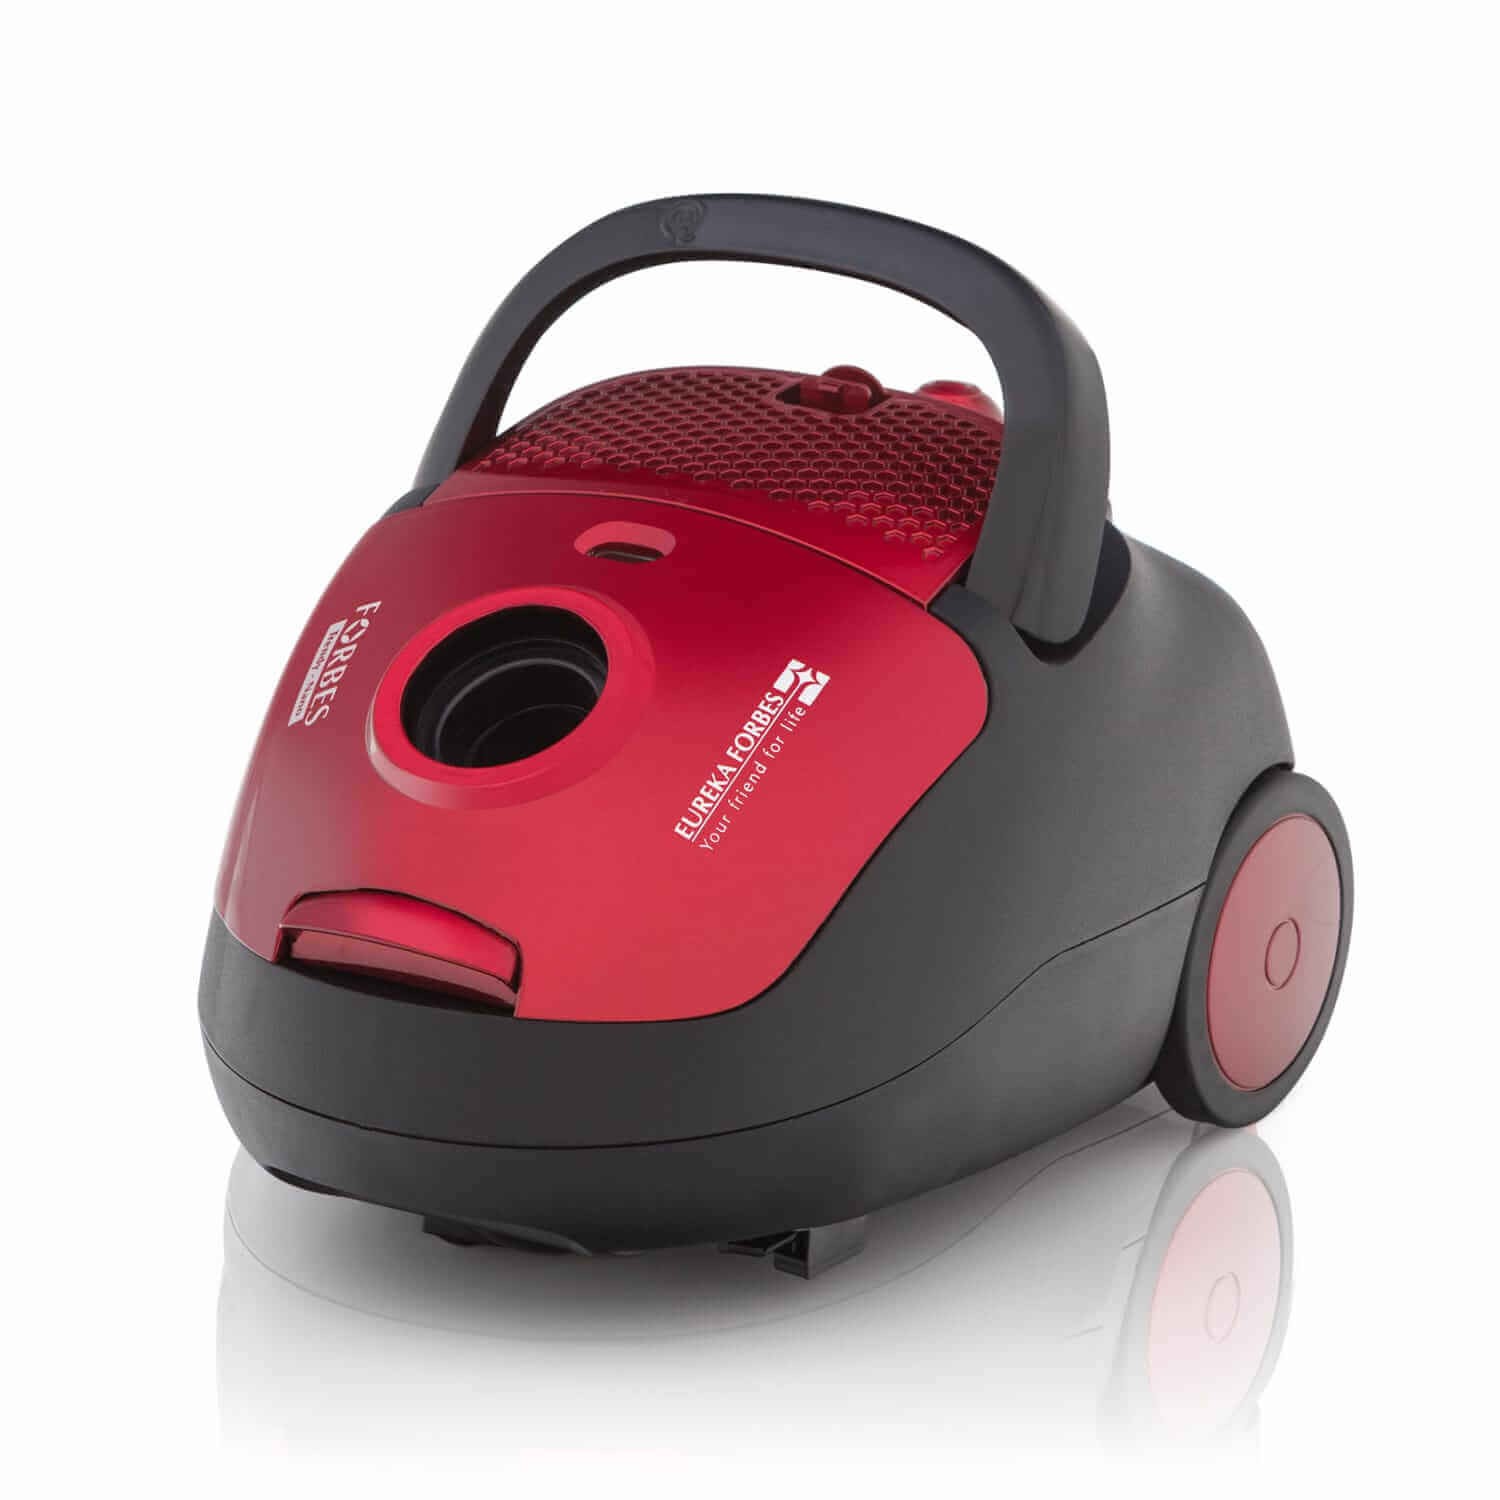 buy vacuum cleaner online